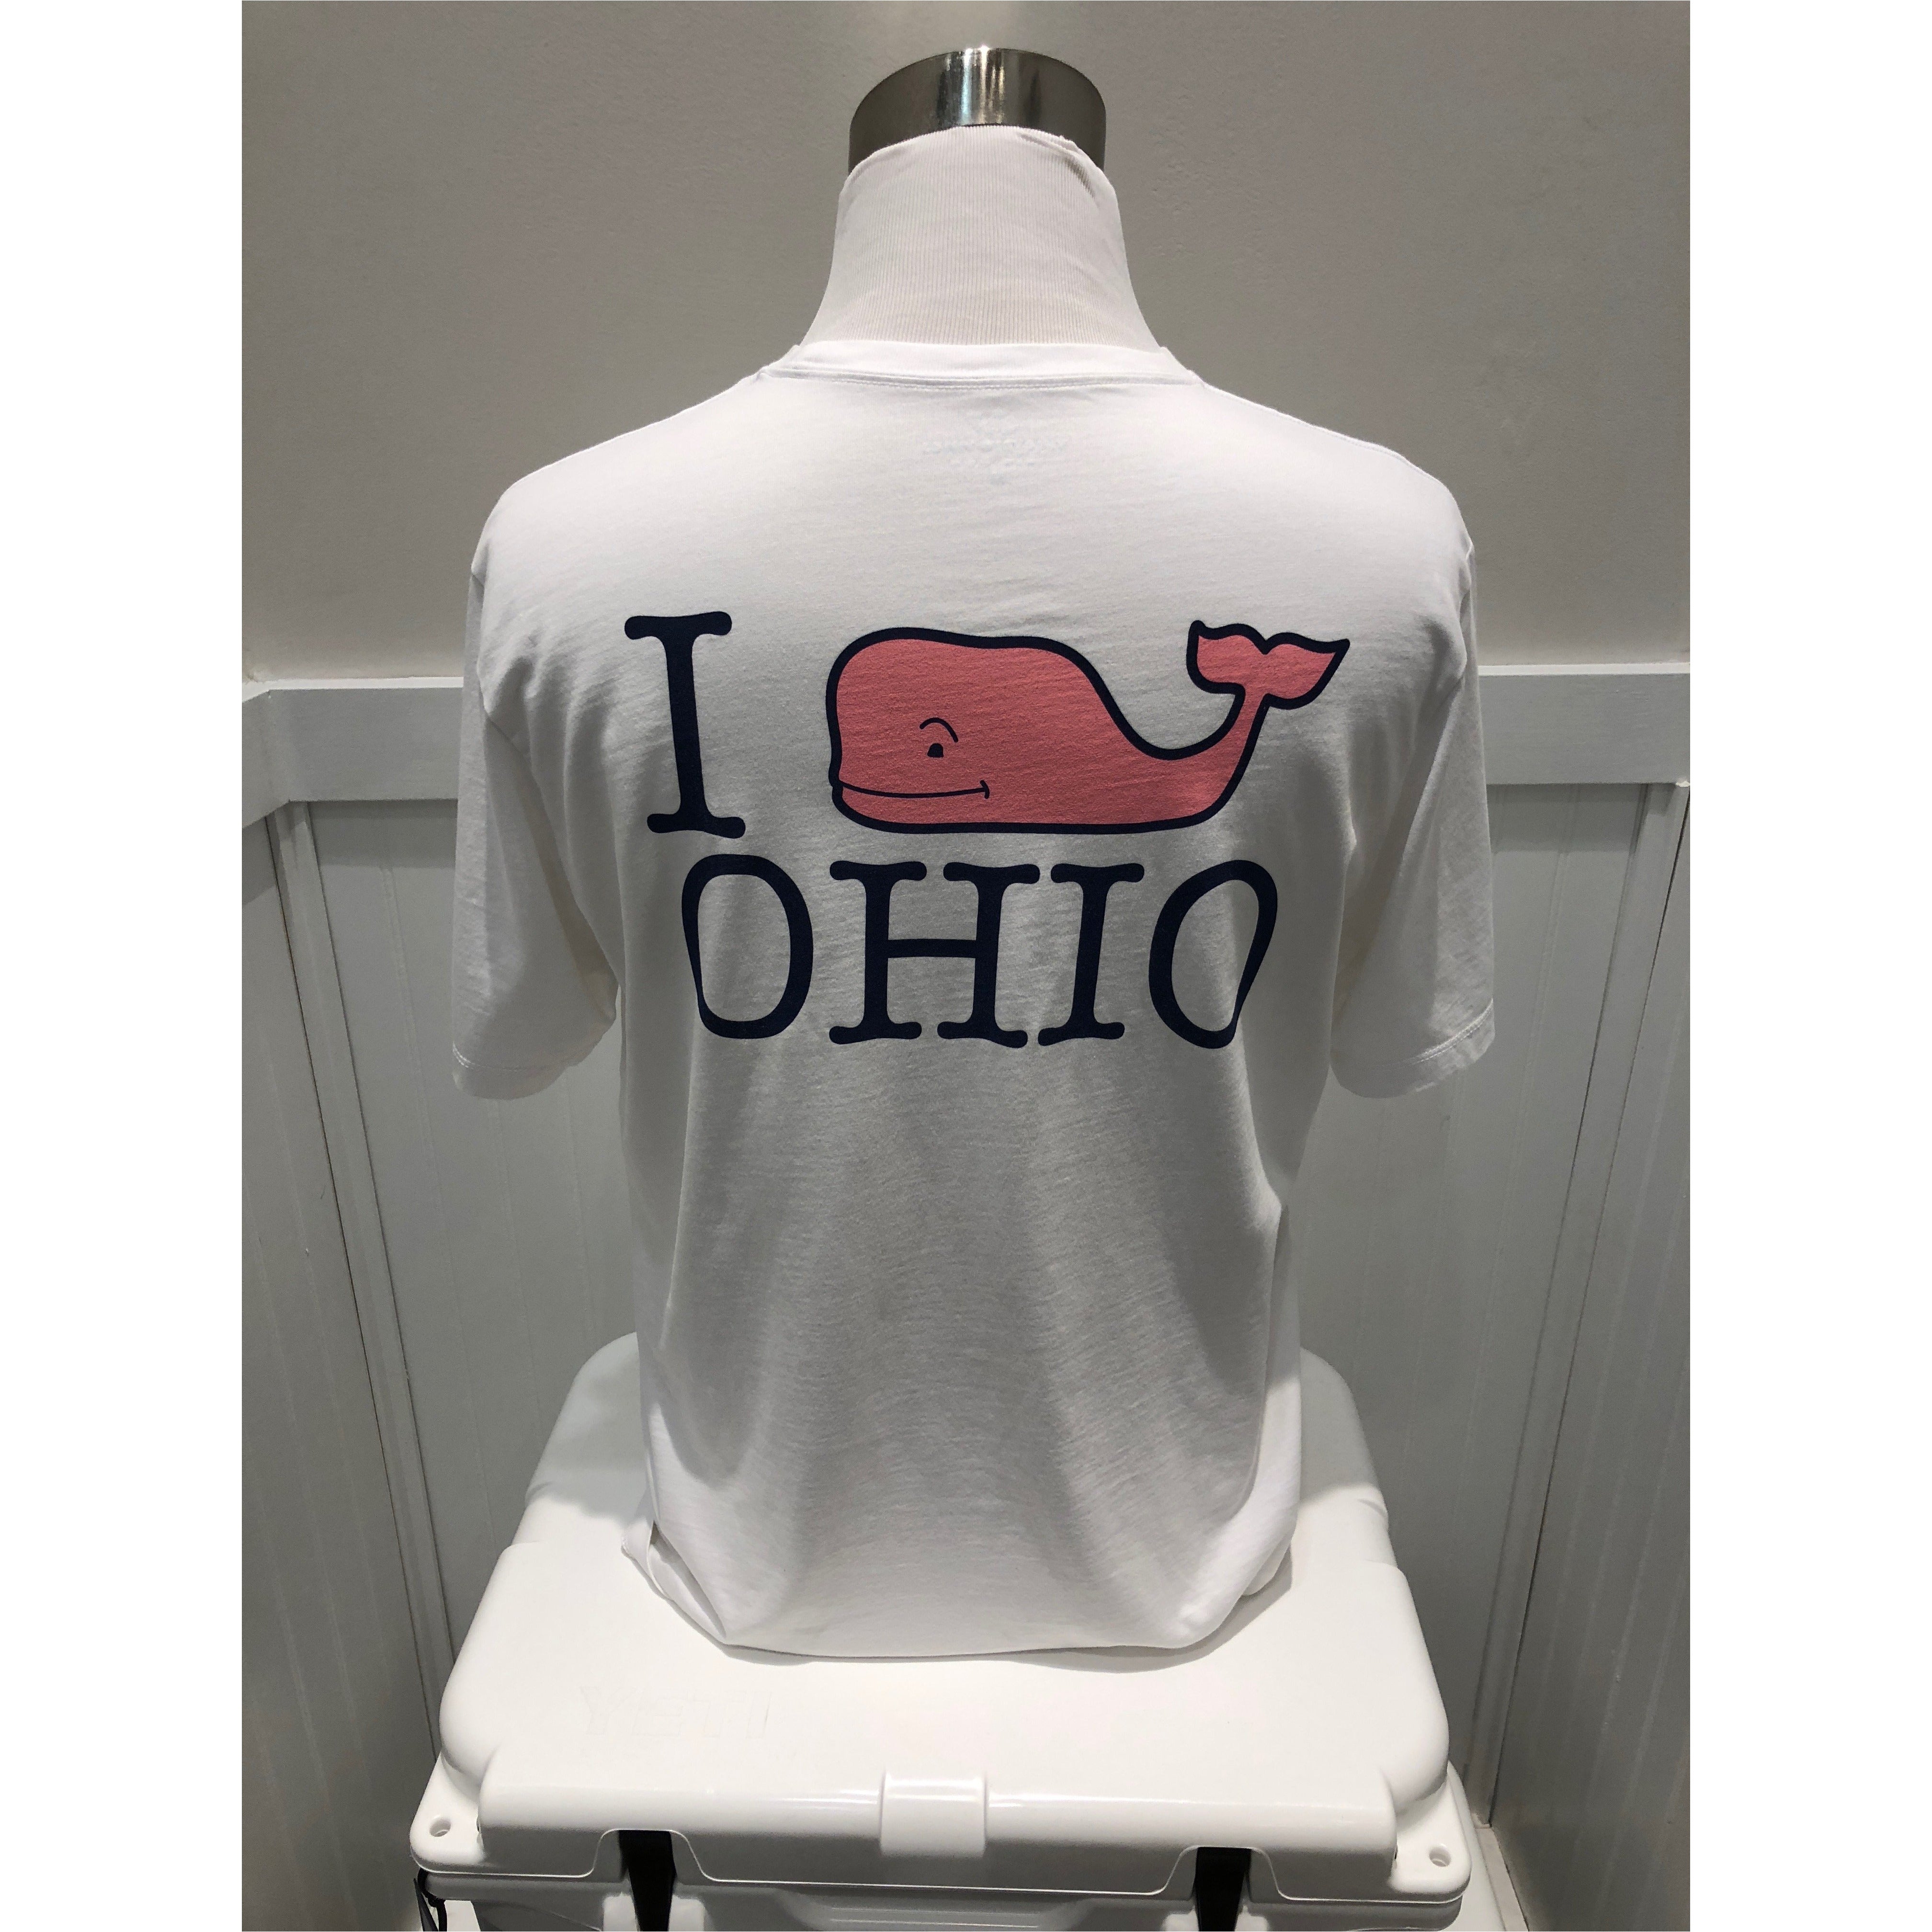  'I Whale Ohio' Short Sleeve Logo White